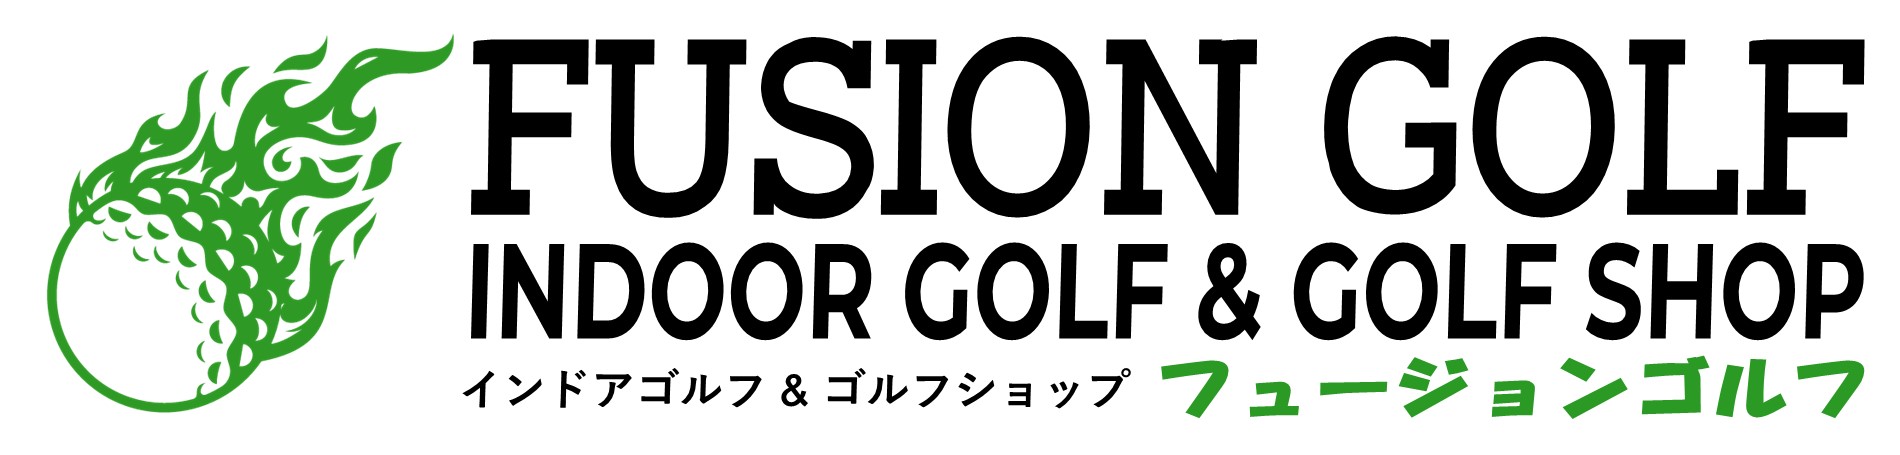 Fusion Golf